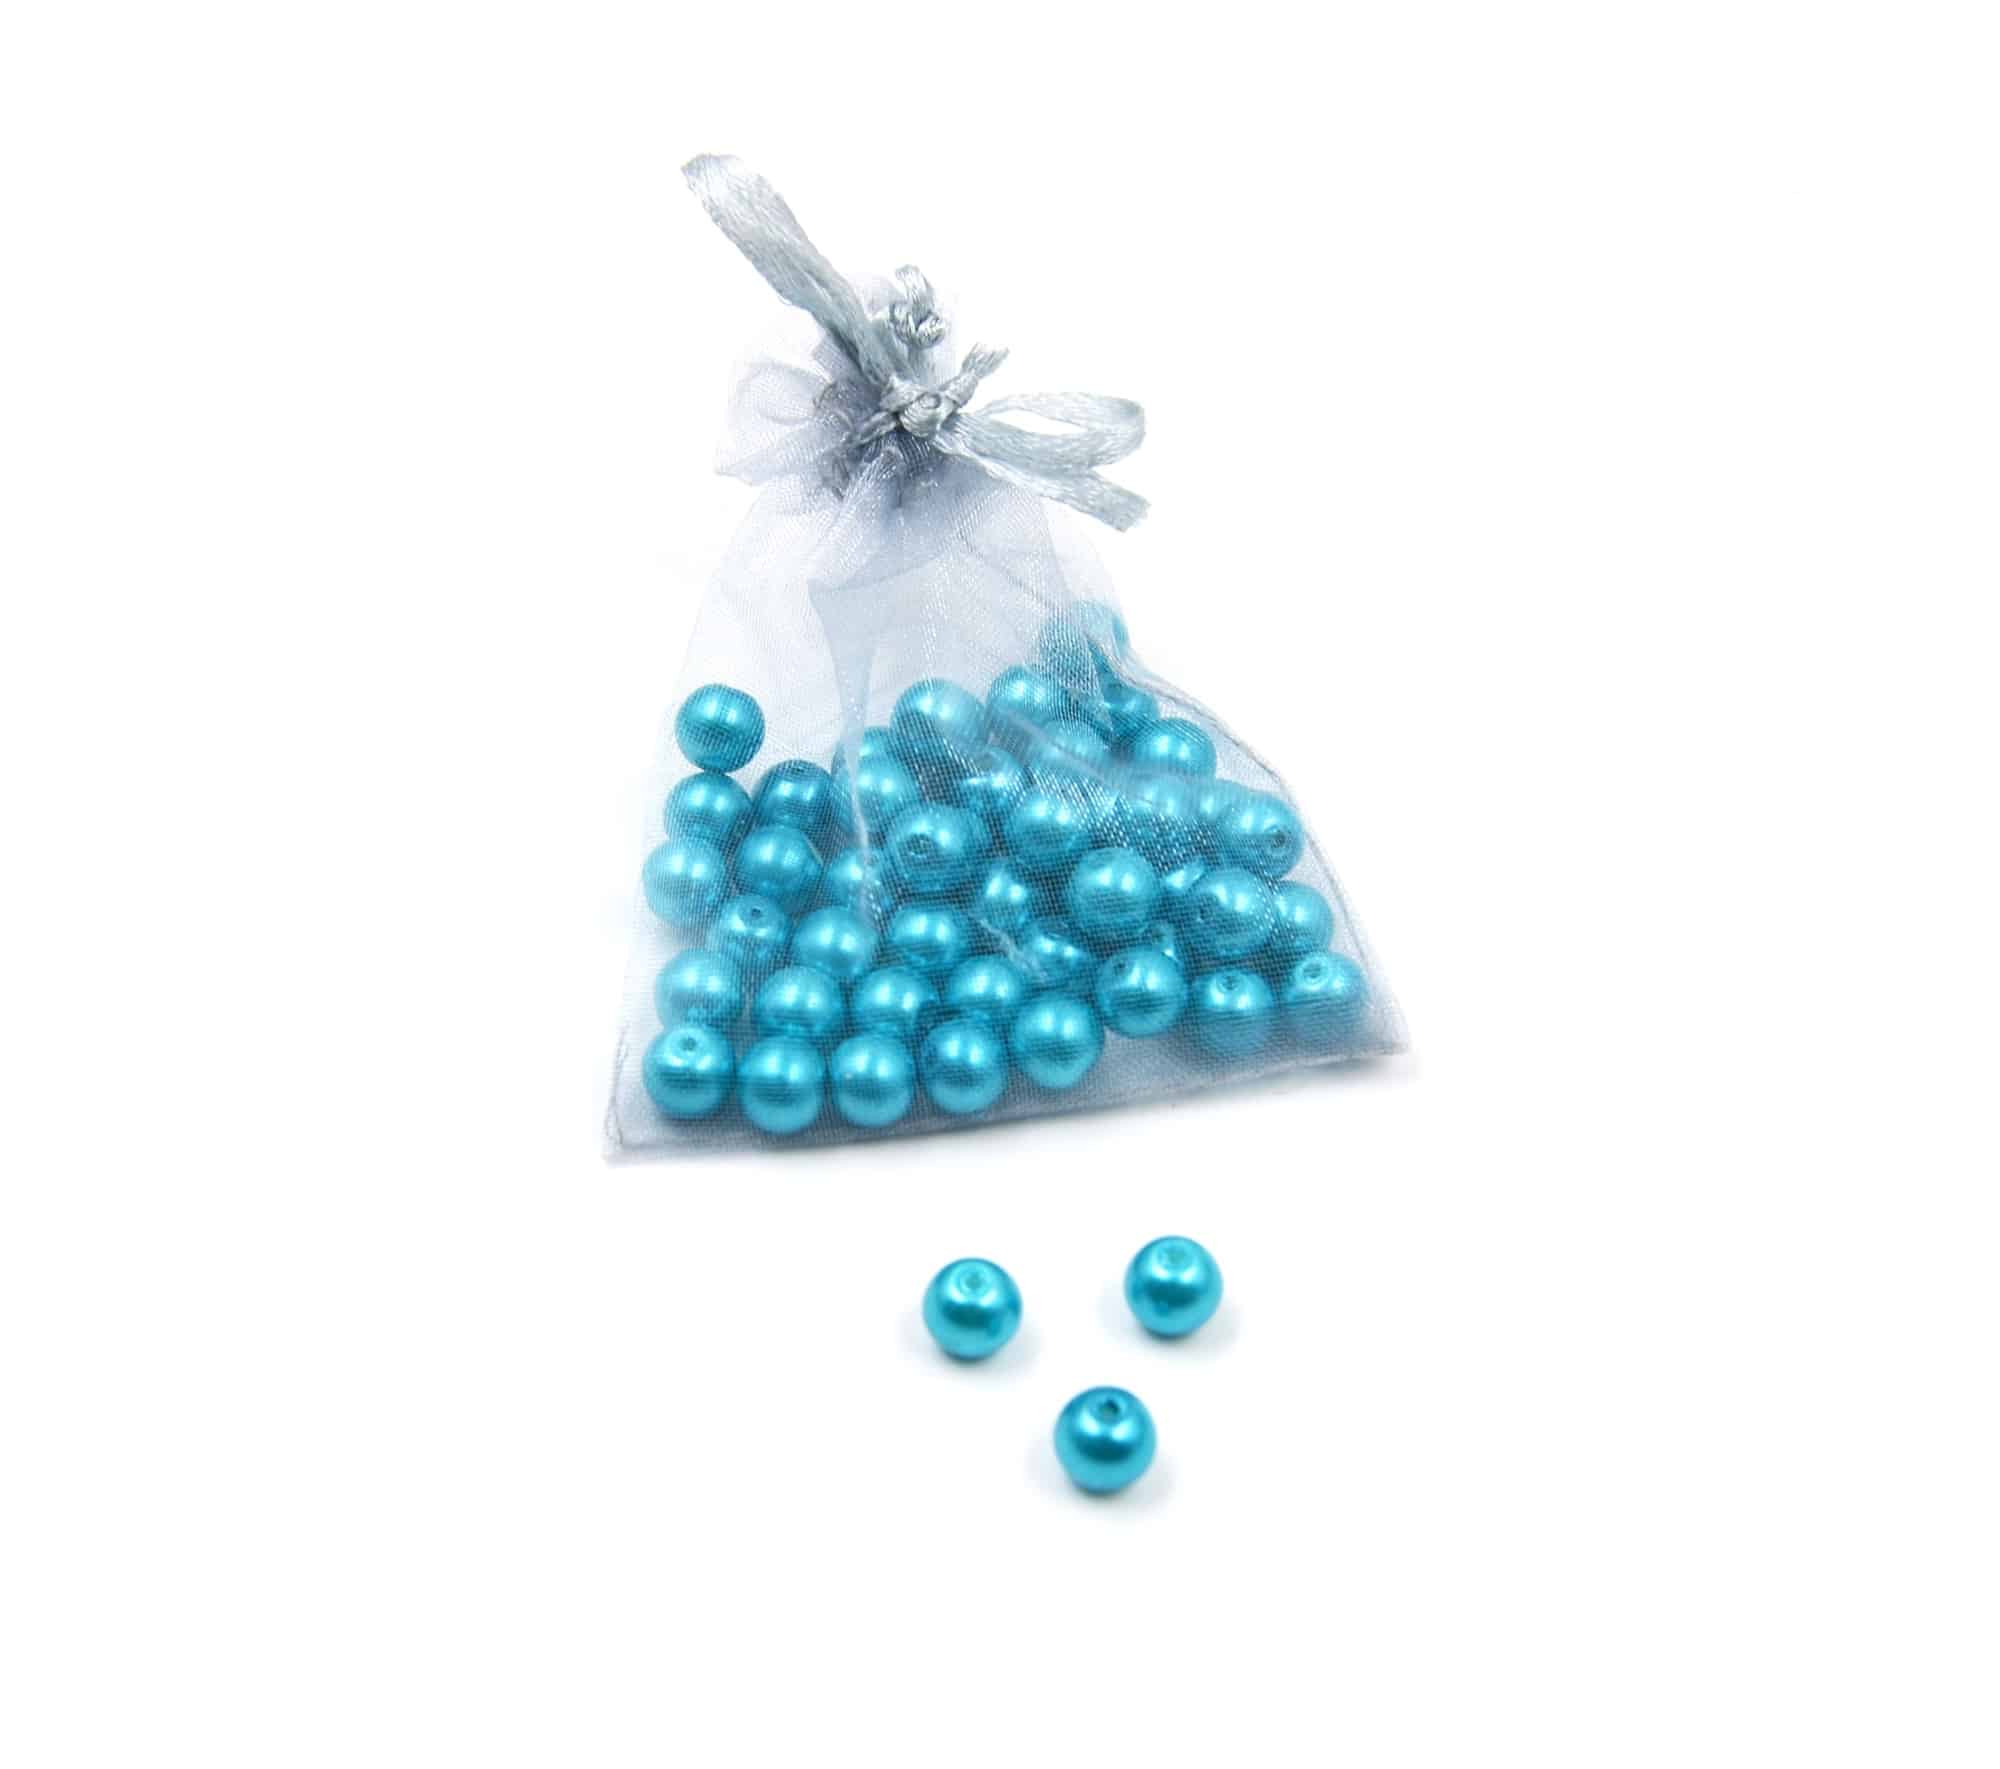 Perles-Nacre-et-Acrylique-8mm-a-Enfiler-Couleur-Bleu-Canard-50-Perles